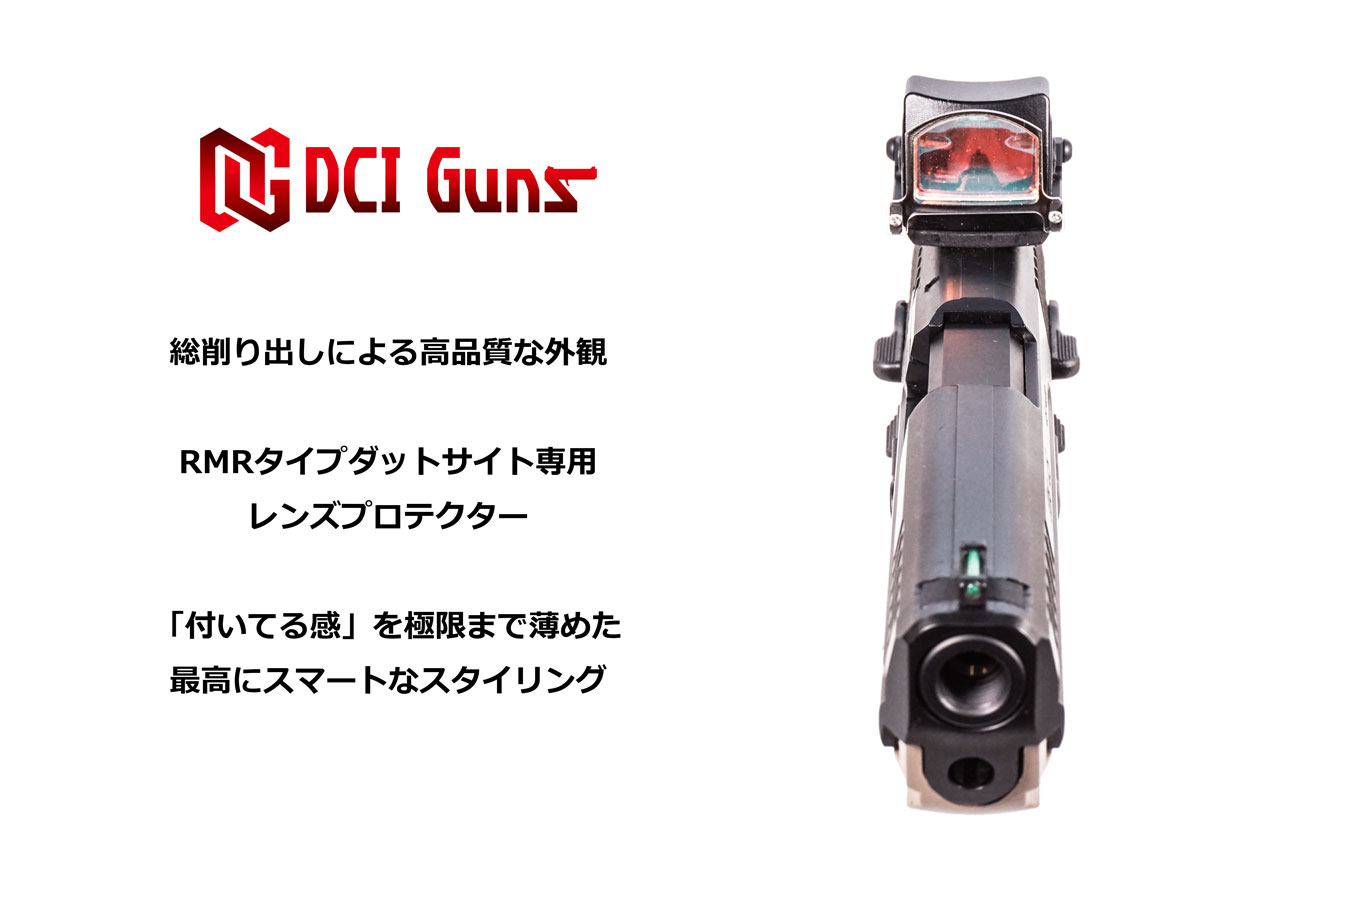 RMRタイプダットサイト用レンズプロテクターV2.0 | DCI Guns 公式直販